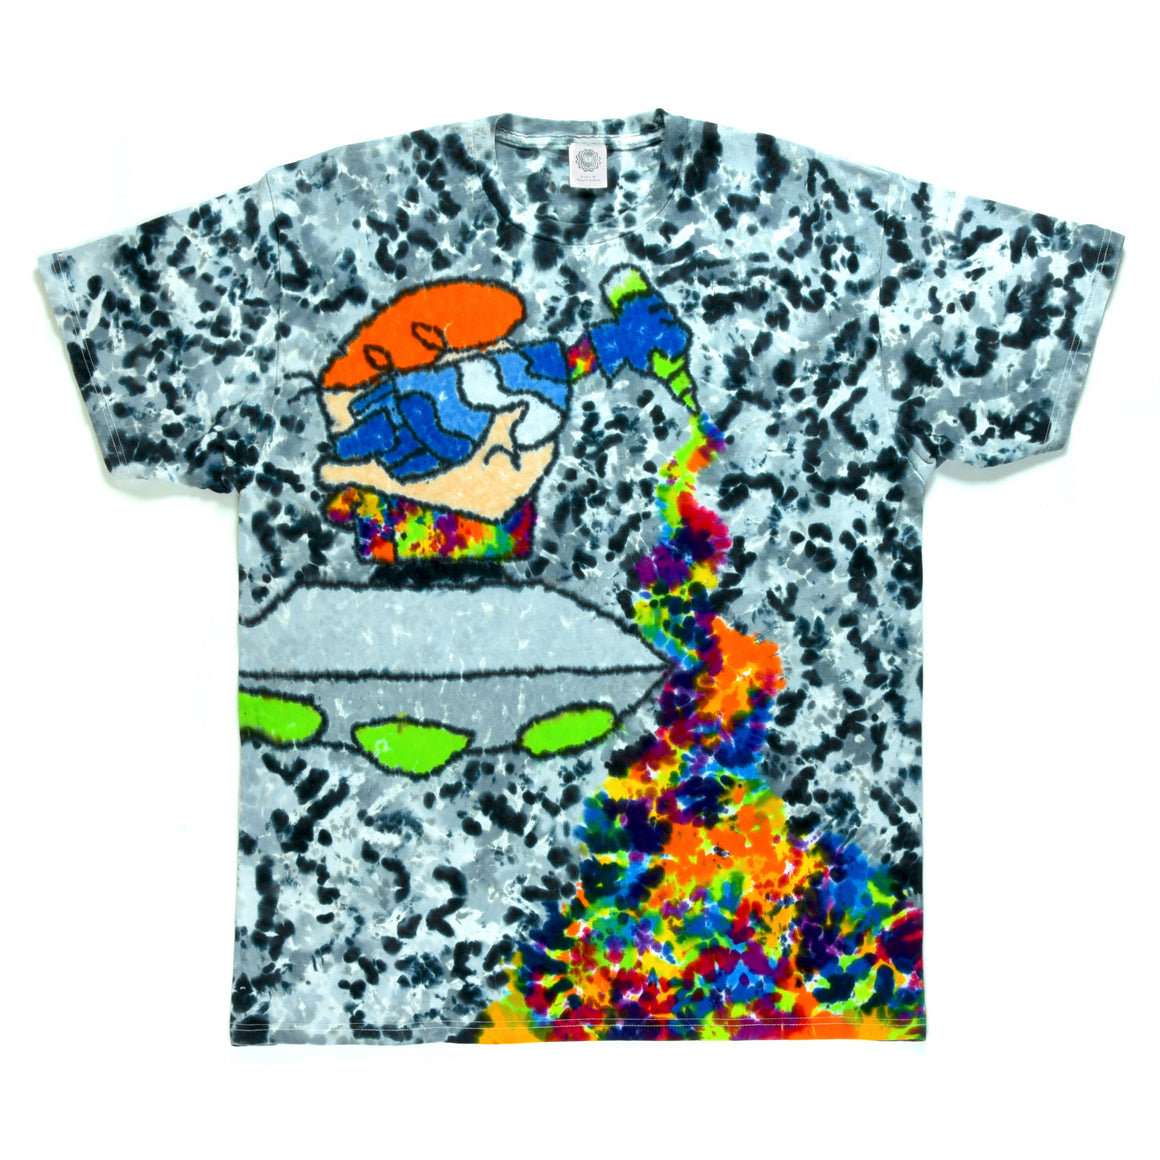 XL Tie Dye T-Shirt - "Dexter"